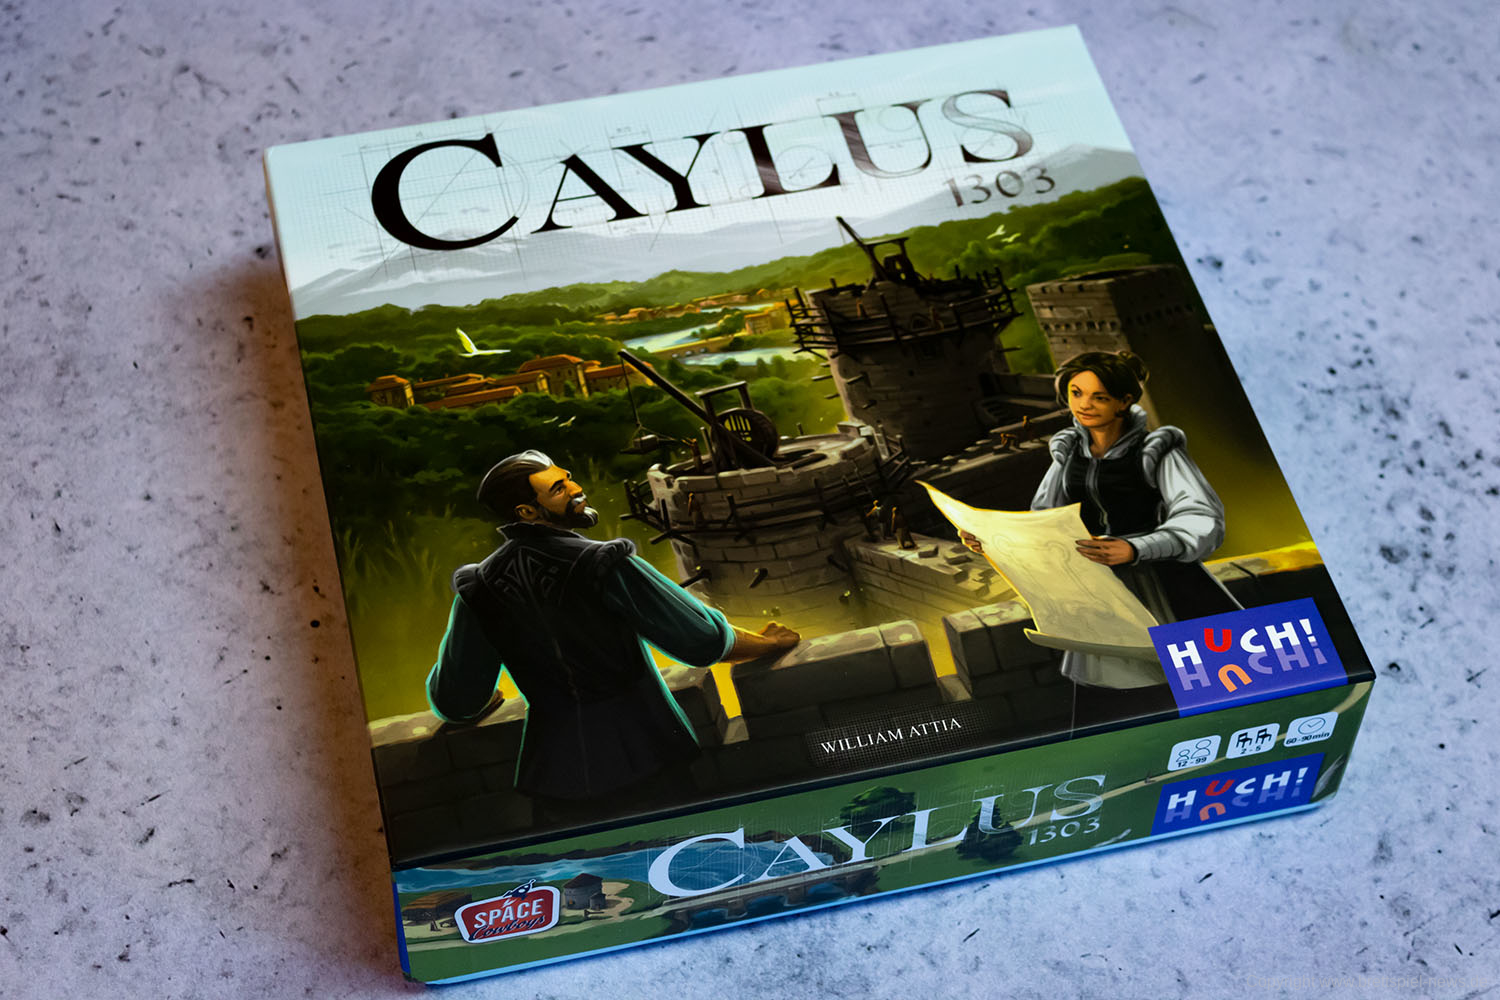 CAYLUS 1303 // Bilder vom Spiel